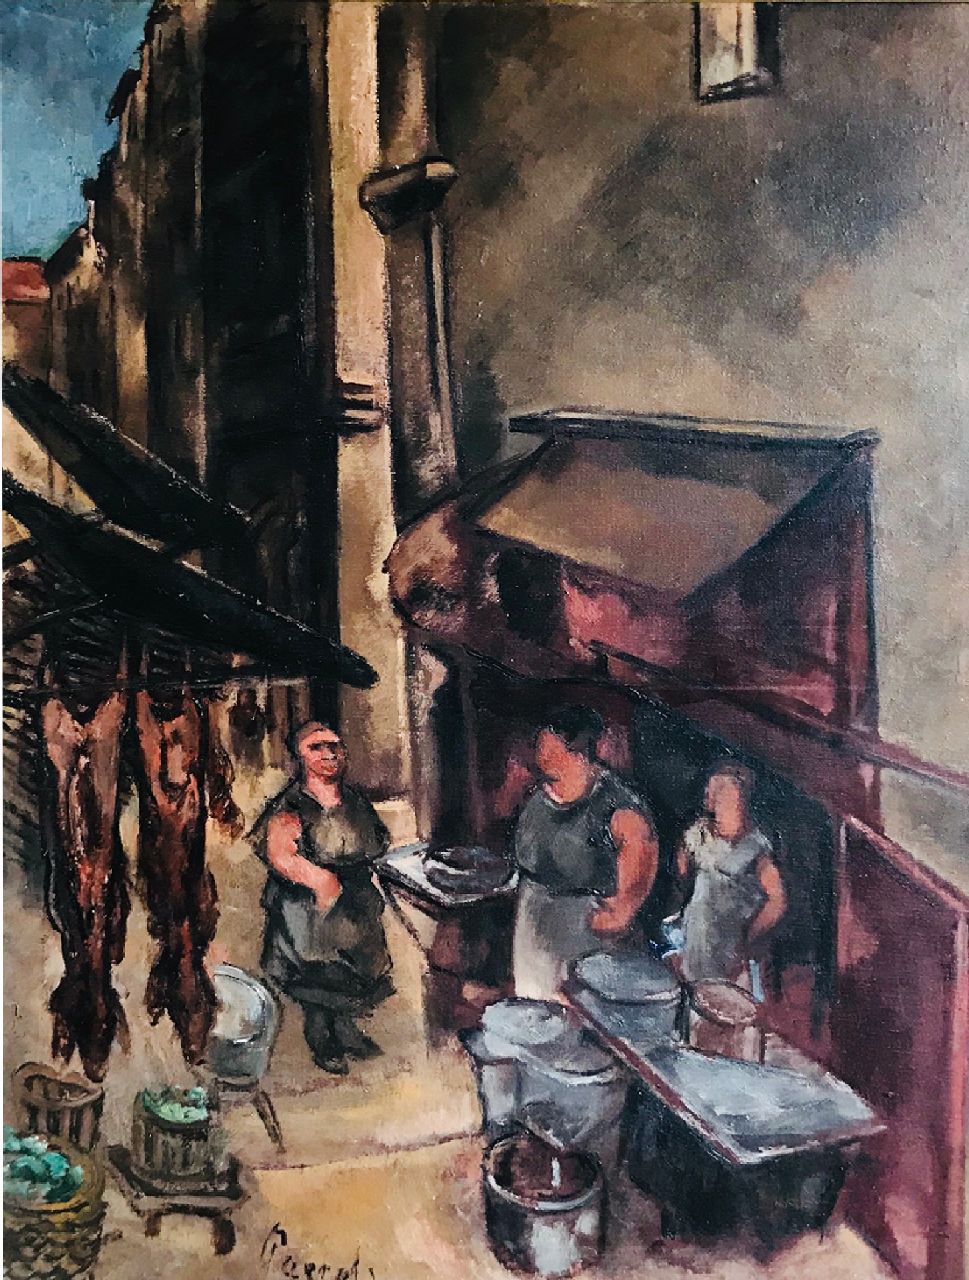 Paerels W.A.  | 'Willem' Adriaan Paerels | Gemälde zum Verkauf angeboten | Altes Viertel mit Fleischer und Figuren, Öl auf Leinwand 80,3 x 60,0 cm, Unterzeichnet l.u. und te dateren ca. 1922-1928